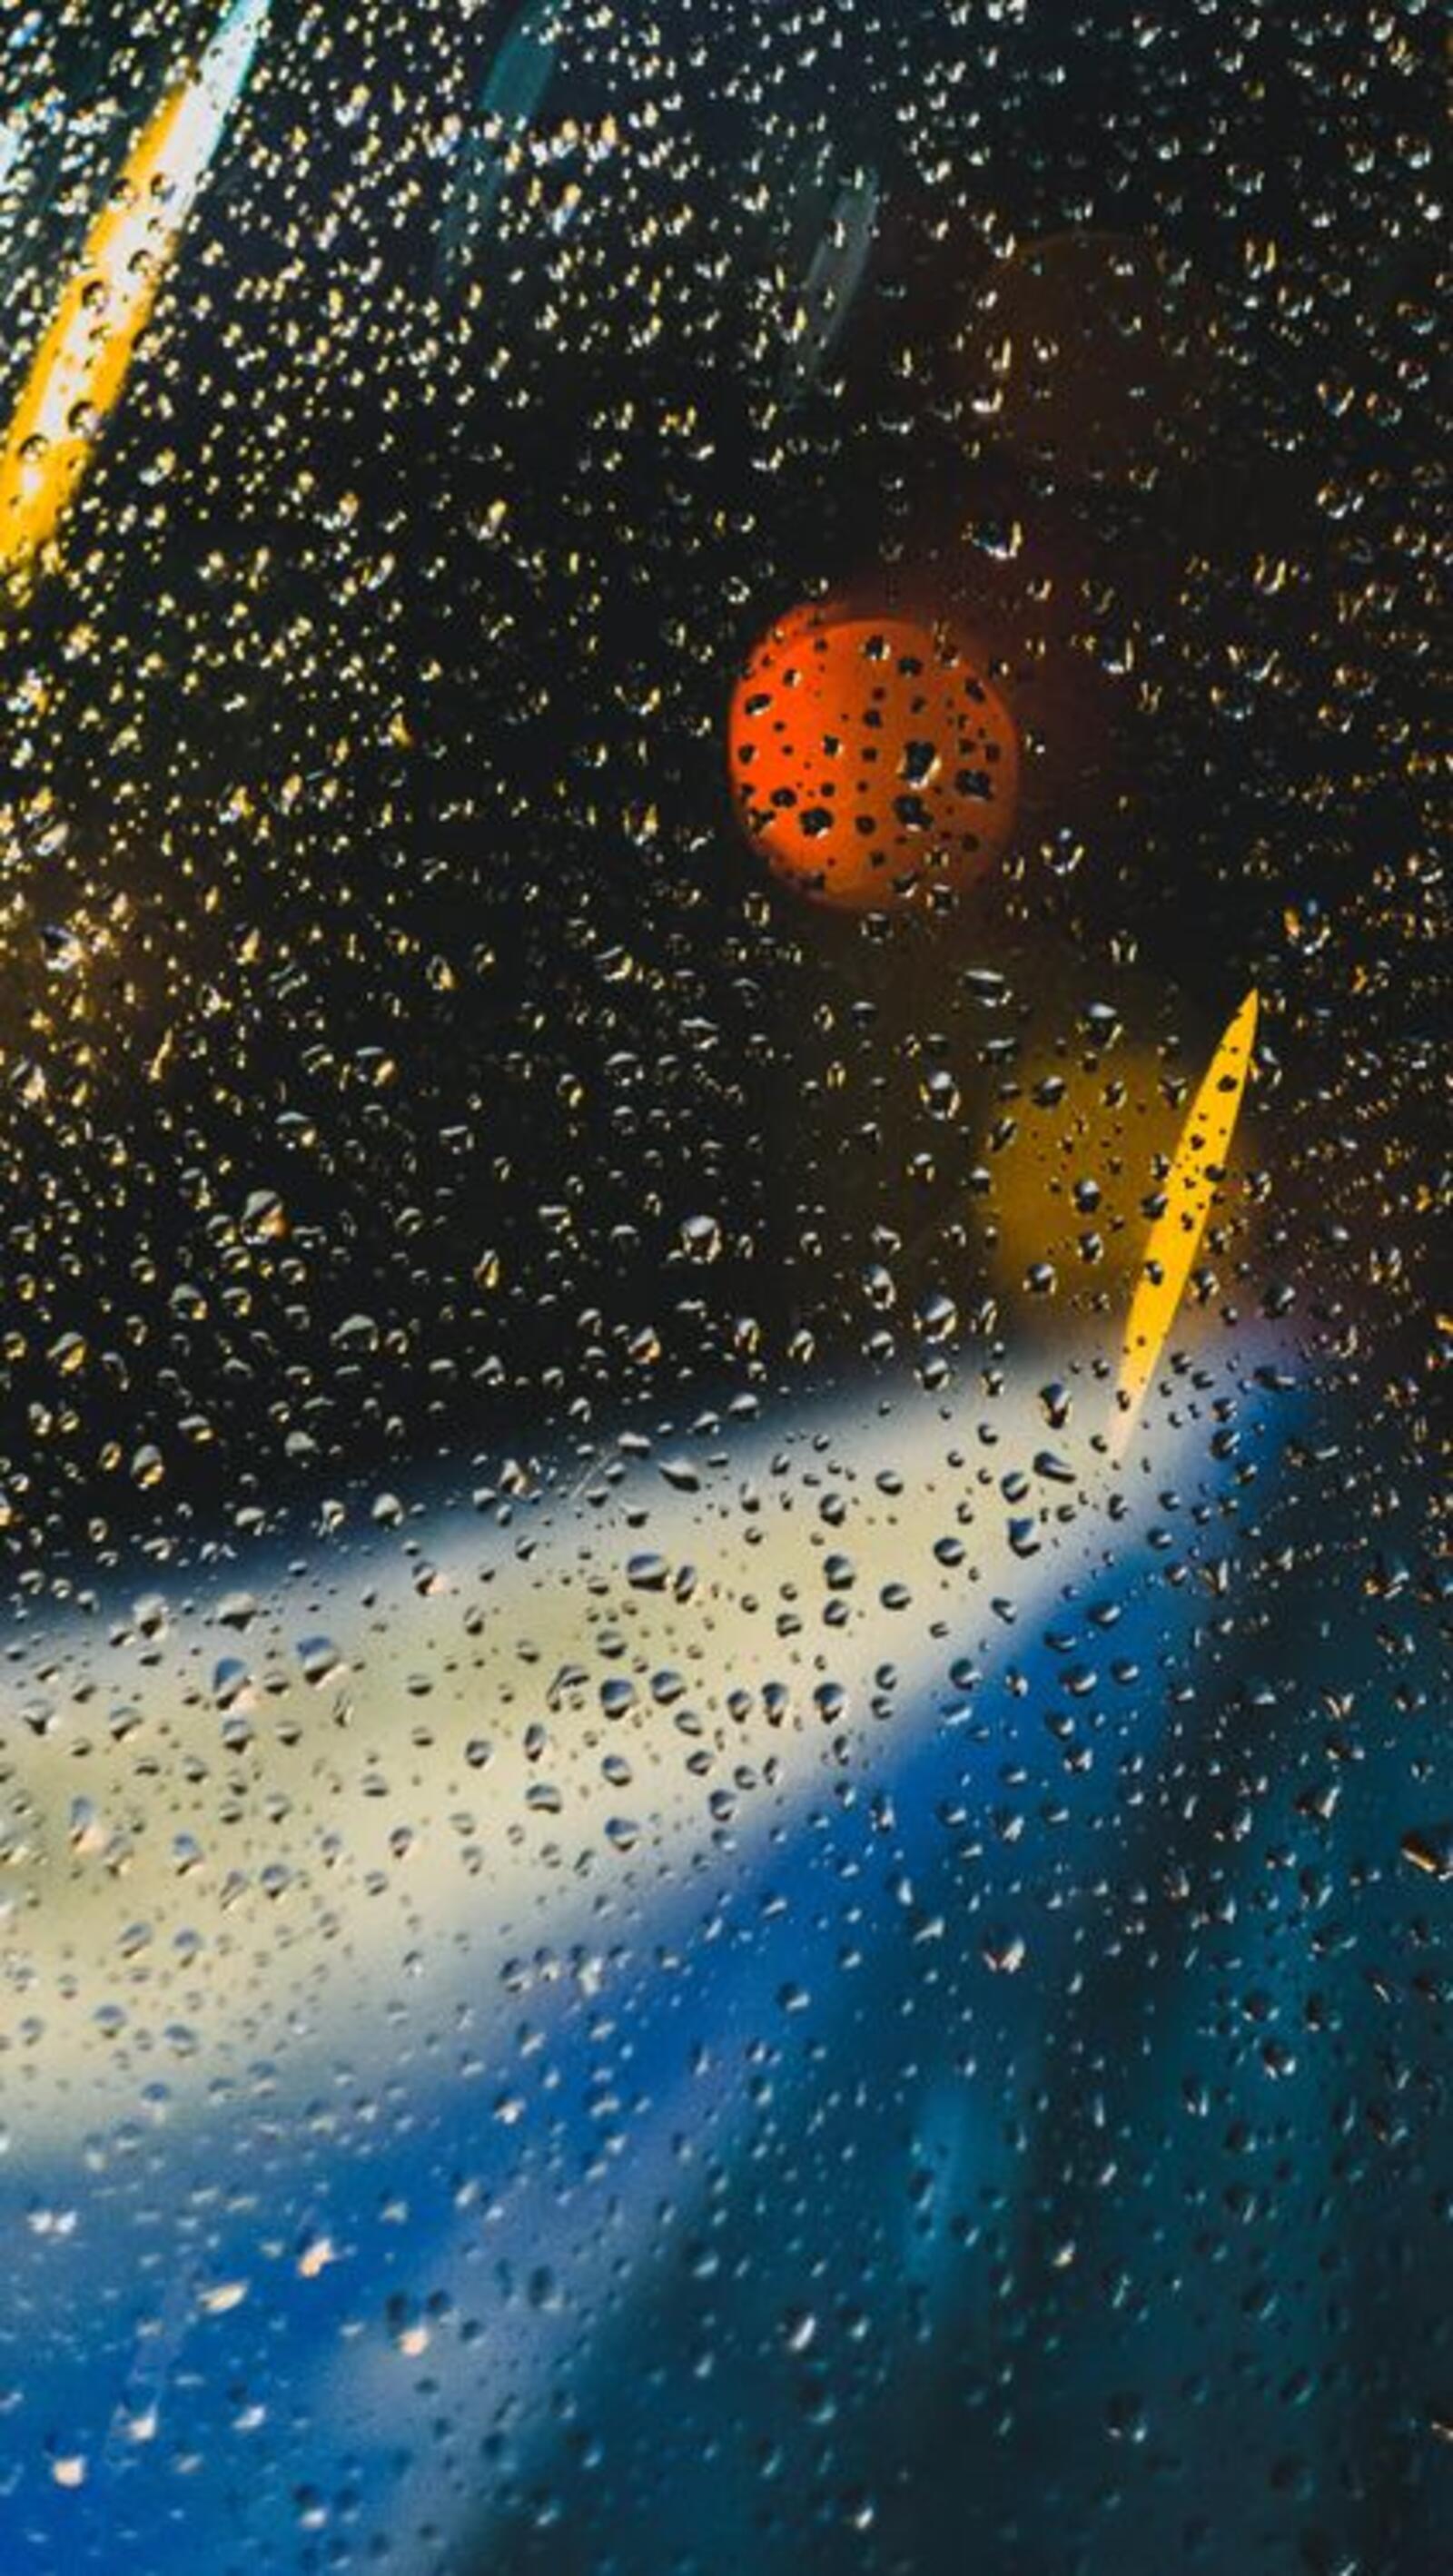 Бесплатное фото Дождь и капли на стекле